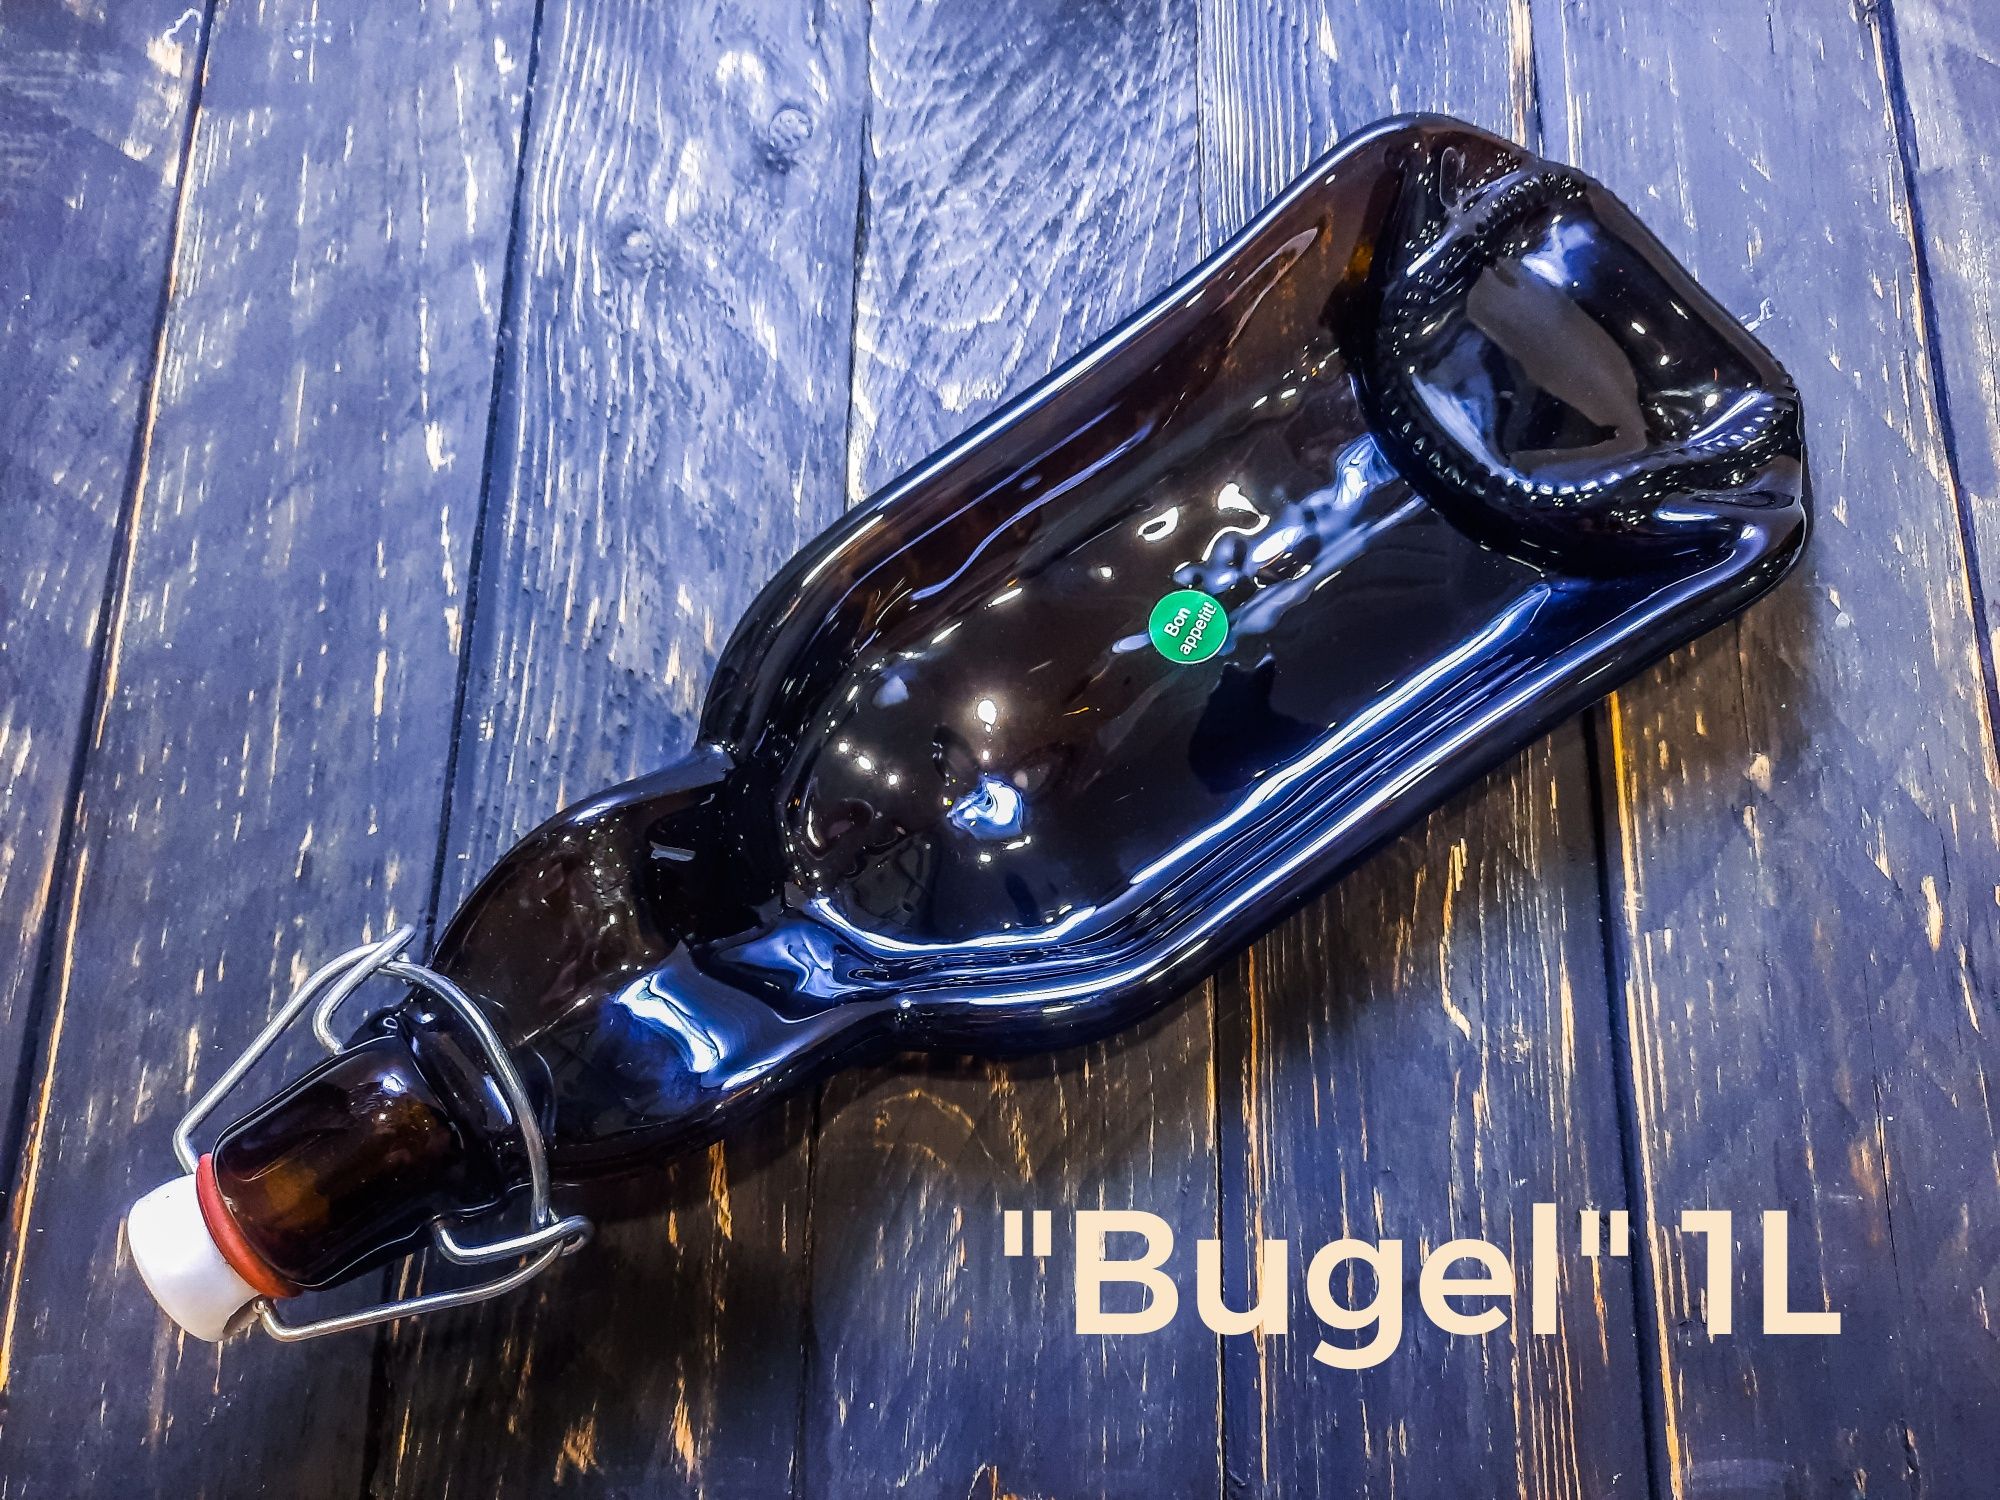 Єксклюзивна тарілка з пляшки 1L "Bugel" / тарелка из бутылки 1л